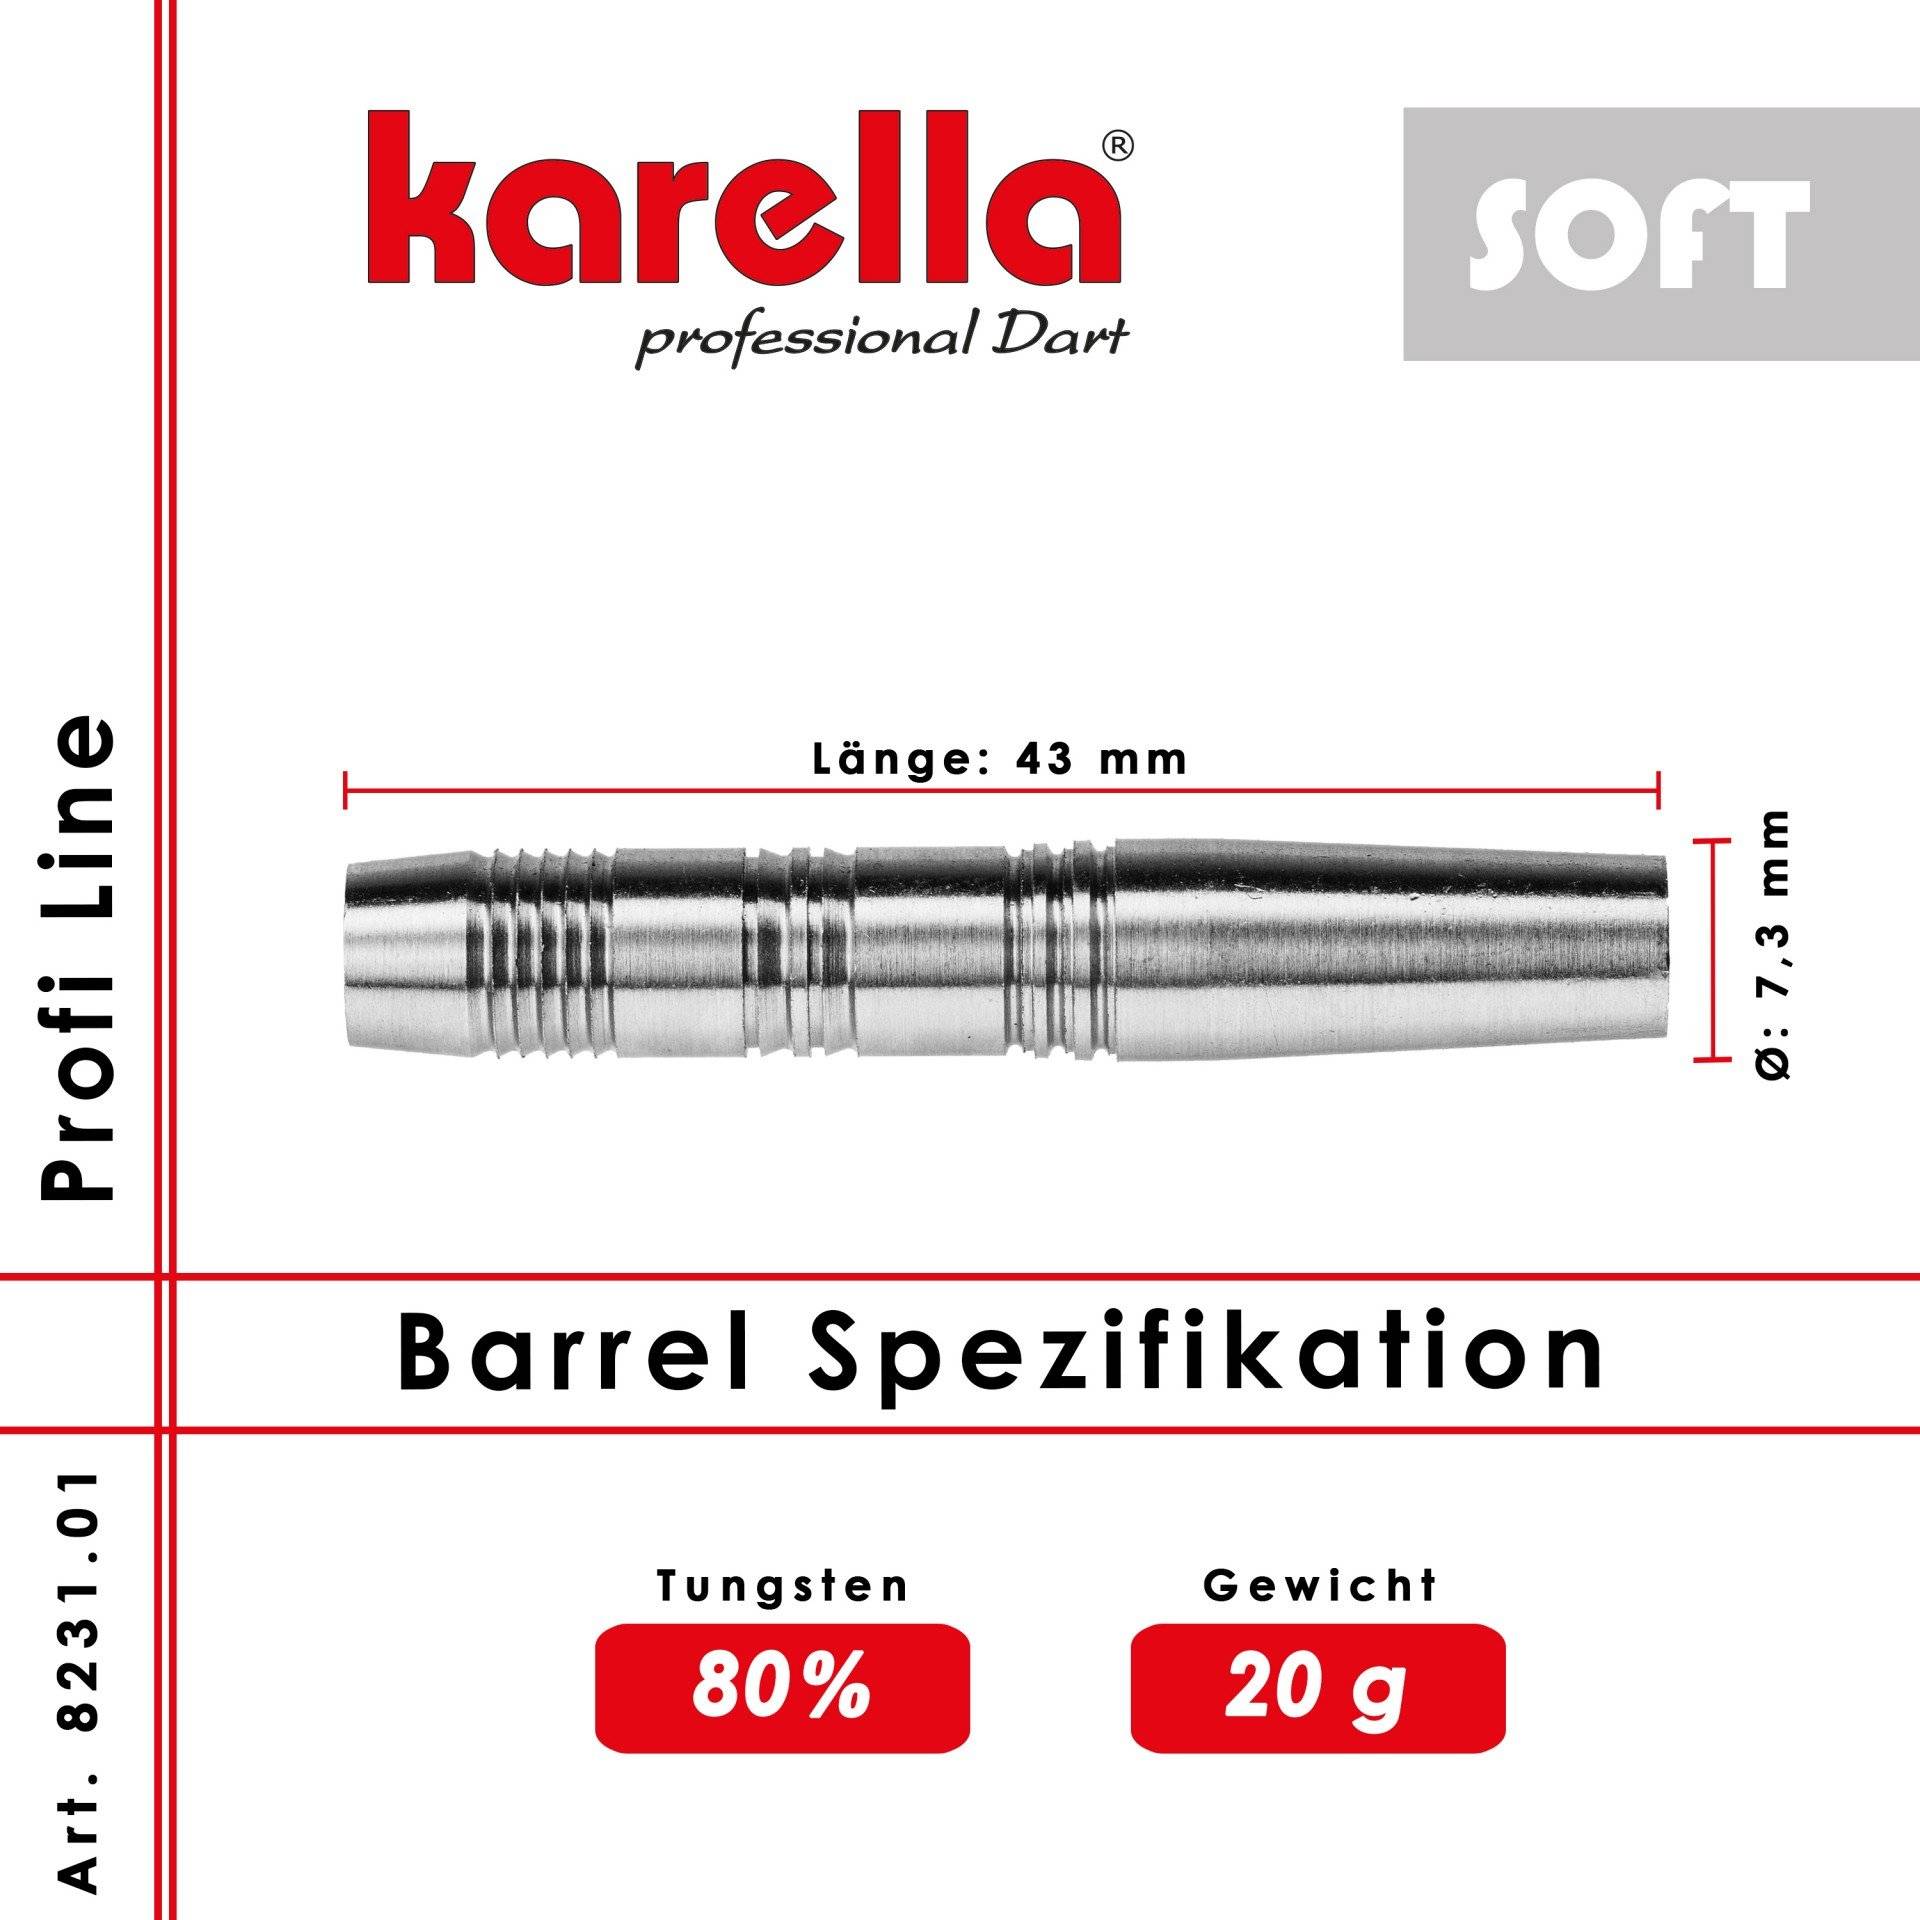 Karella Barrel 80% Tungsten PLS Soft 80-01 20g von Karella